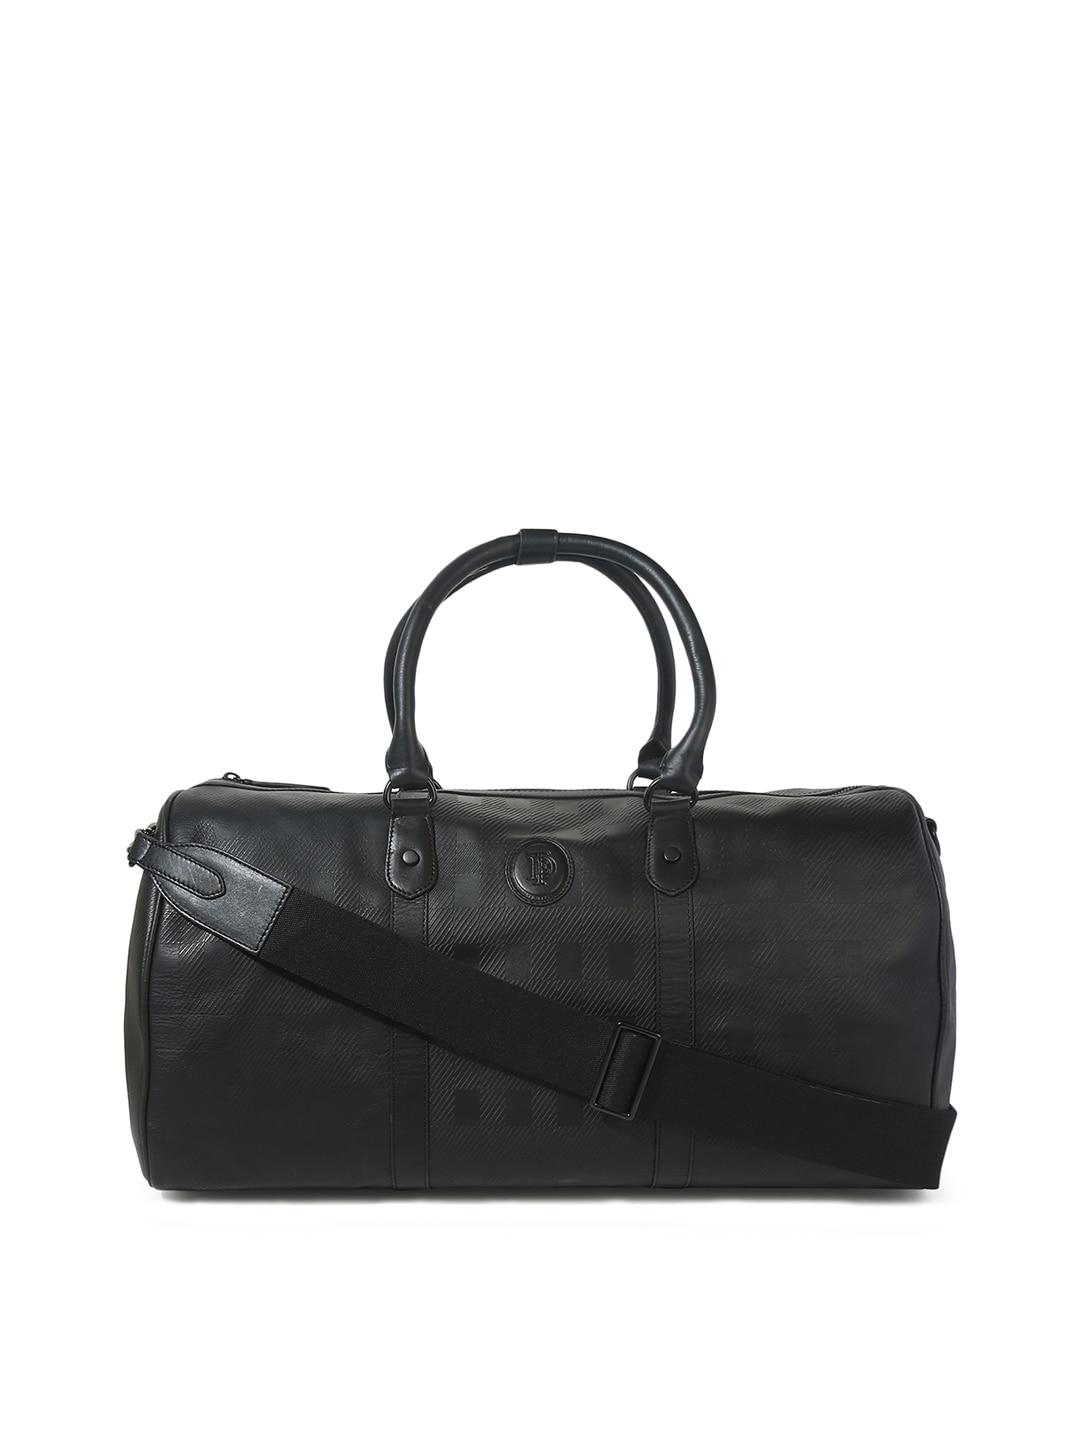 ted baker black leather oversized structured handheld bag